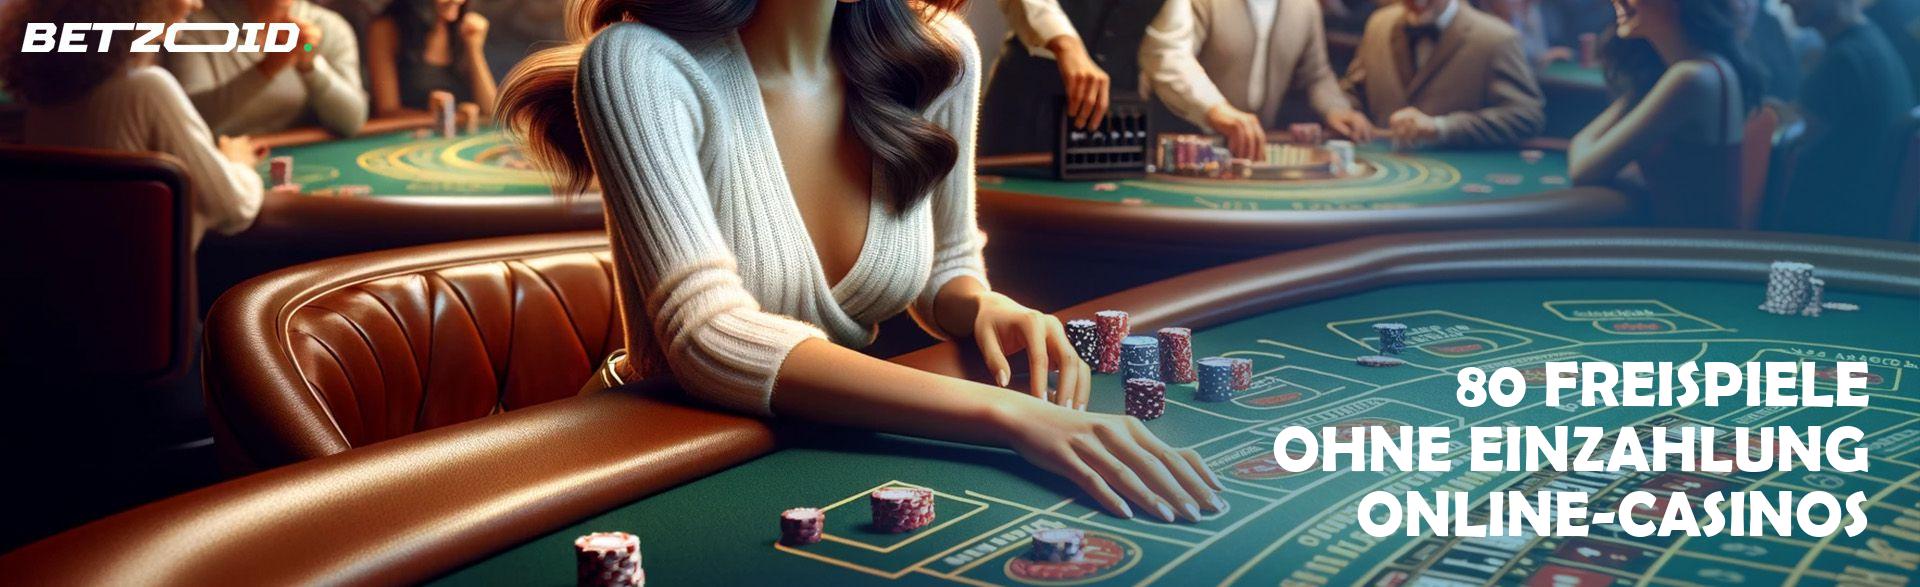 80 Freispiele ohne Einzahlung Online-Casinos.